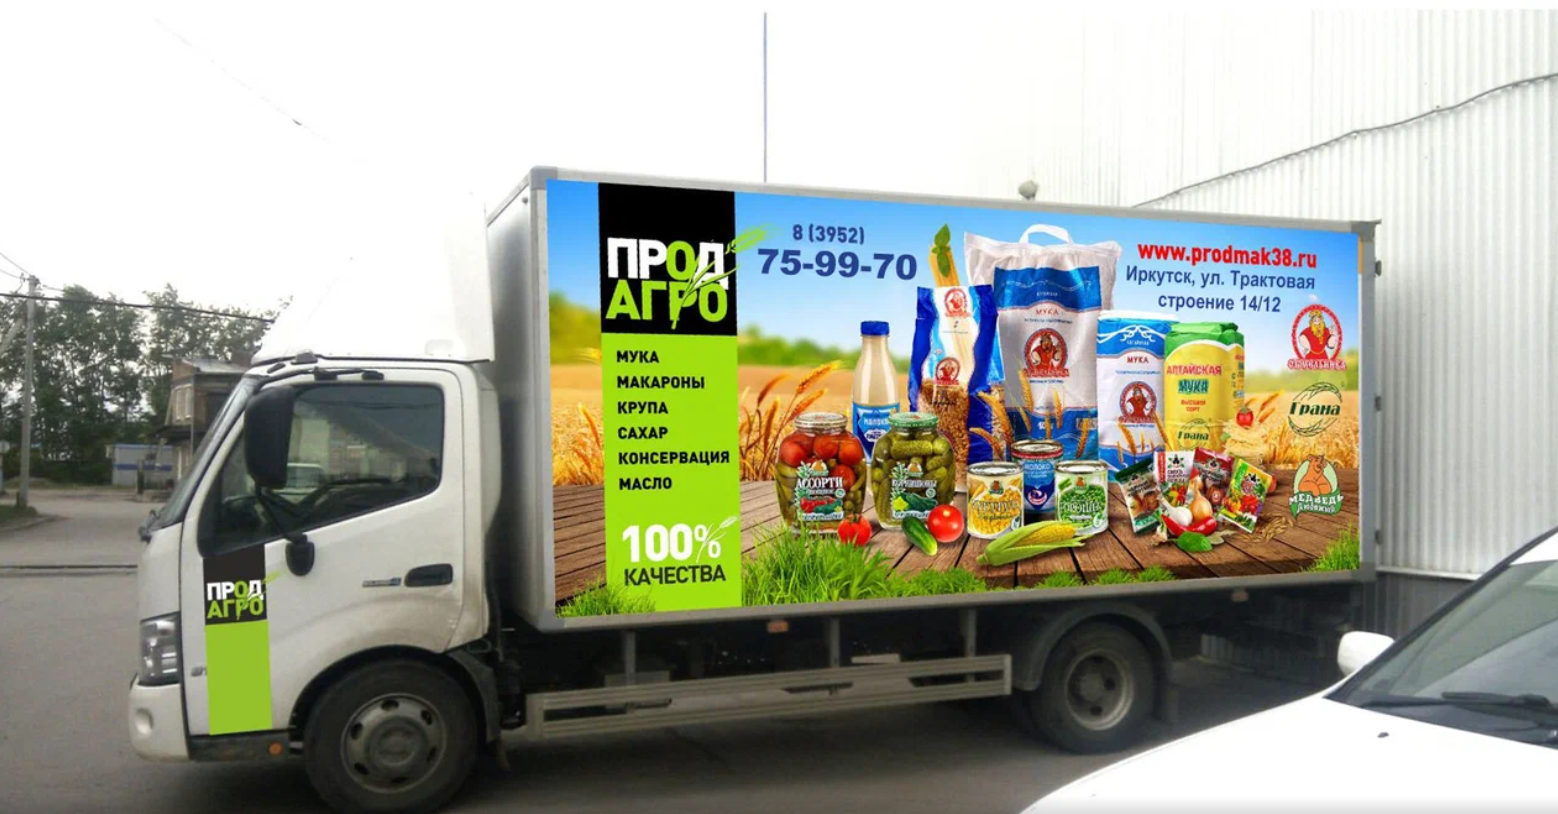 Продукты питания с доставкой по оптовым цена - ПродАгро